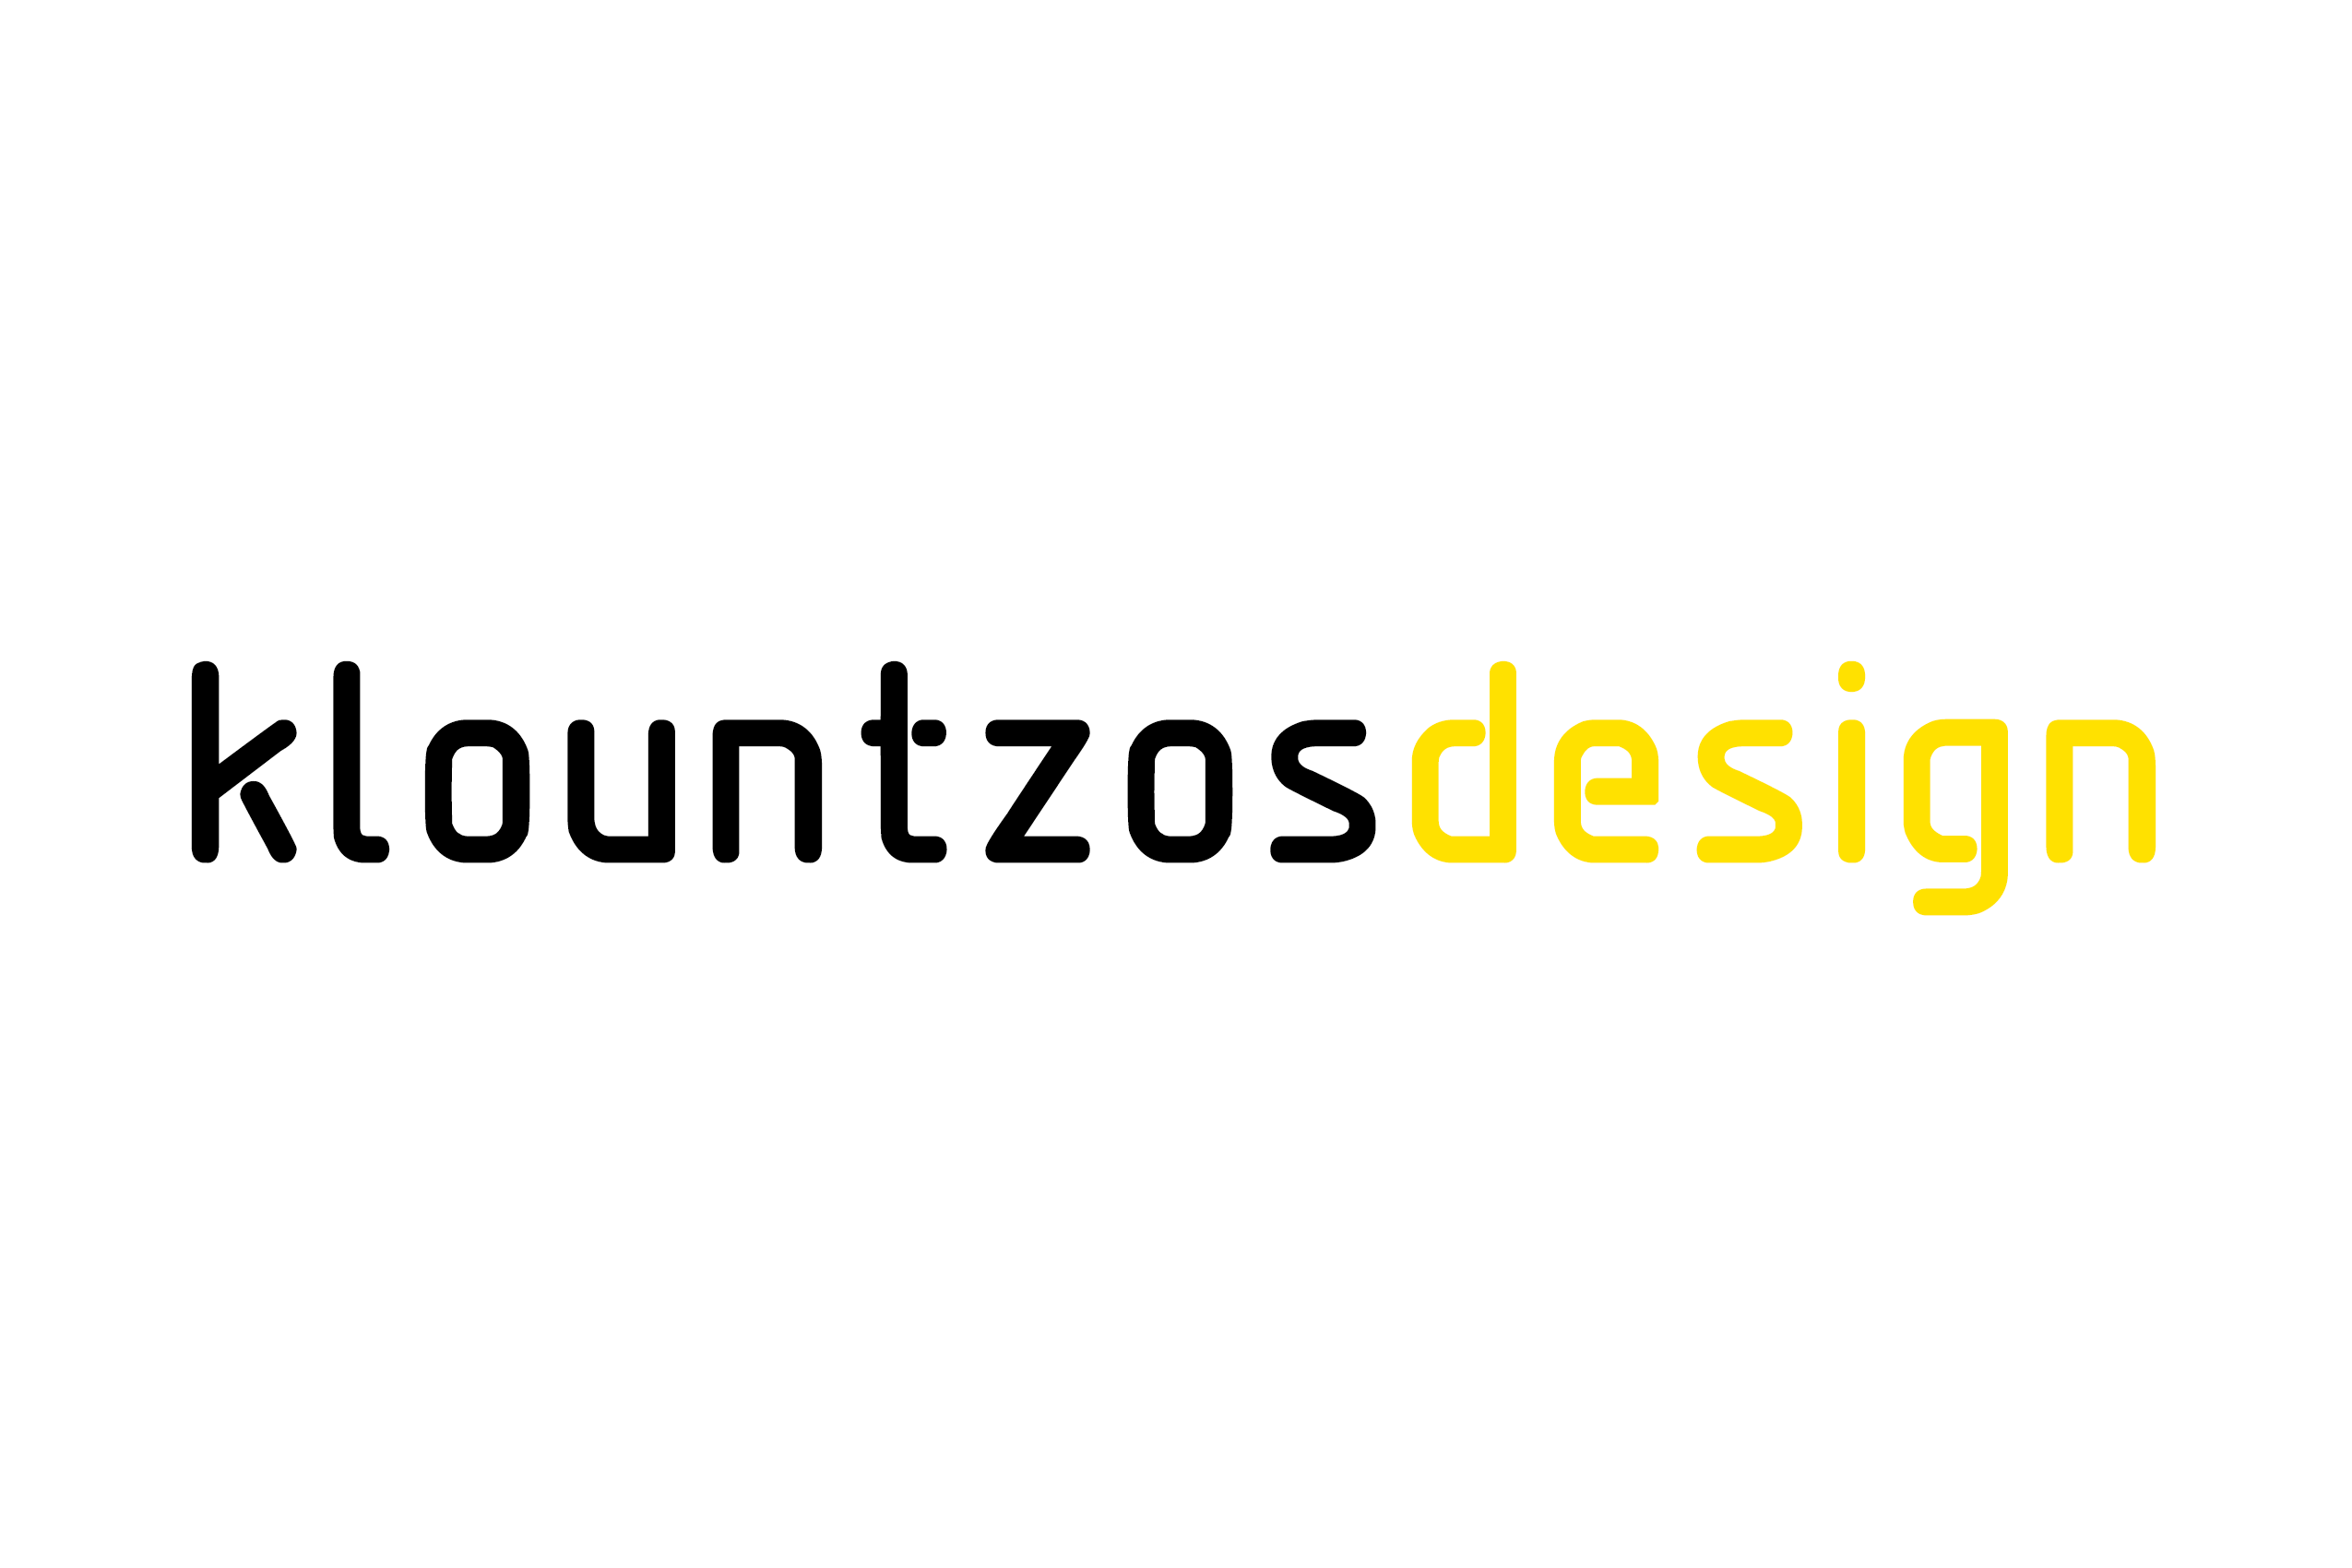 Klountzos design by Κλουντζός Άγγελος